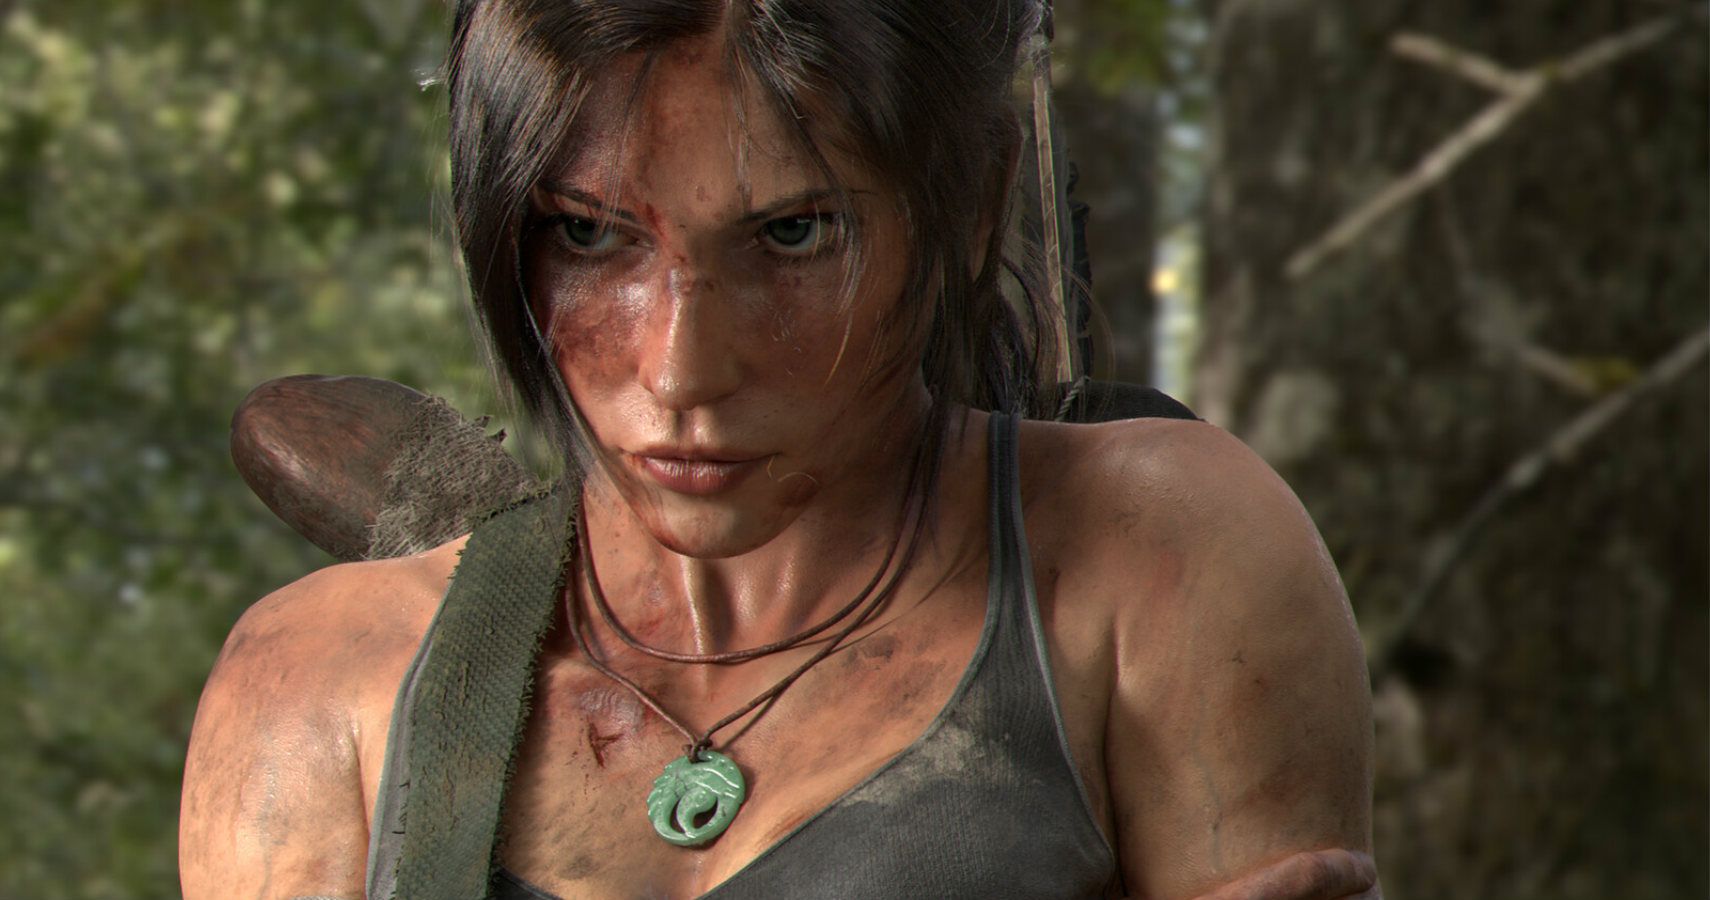 Joseph Liu's Lara Croft